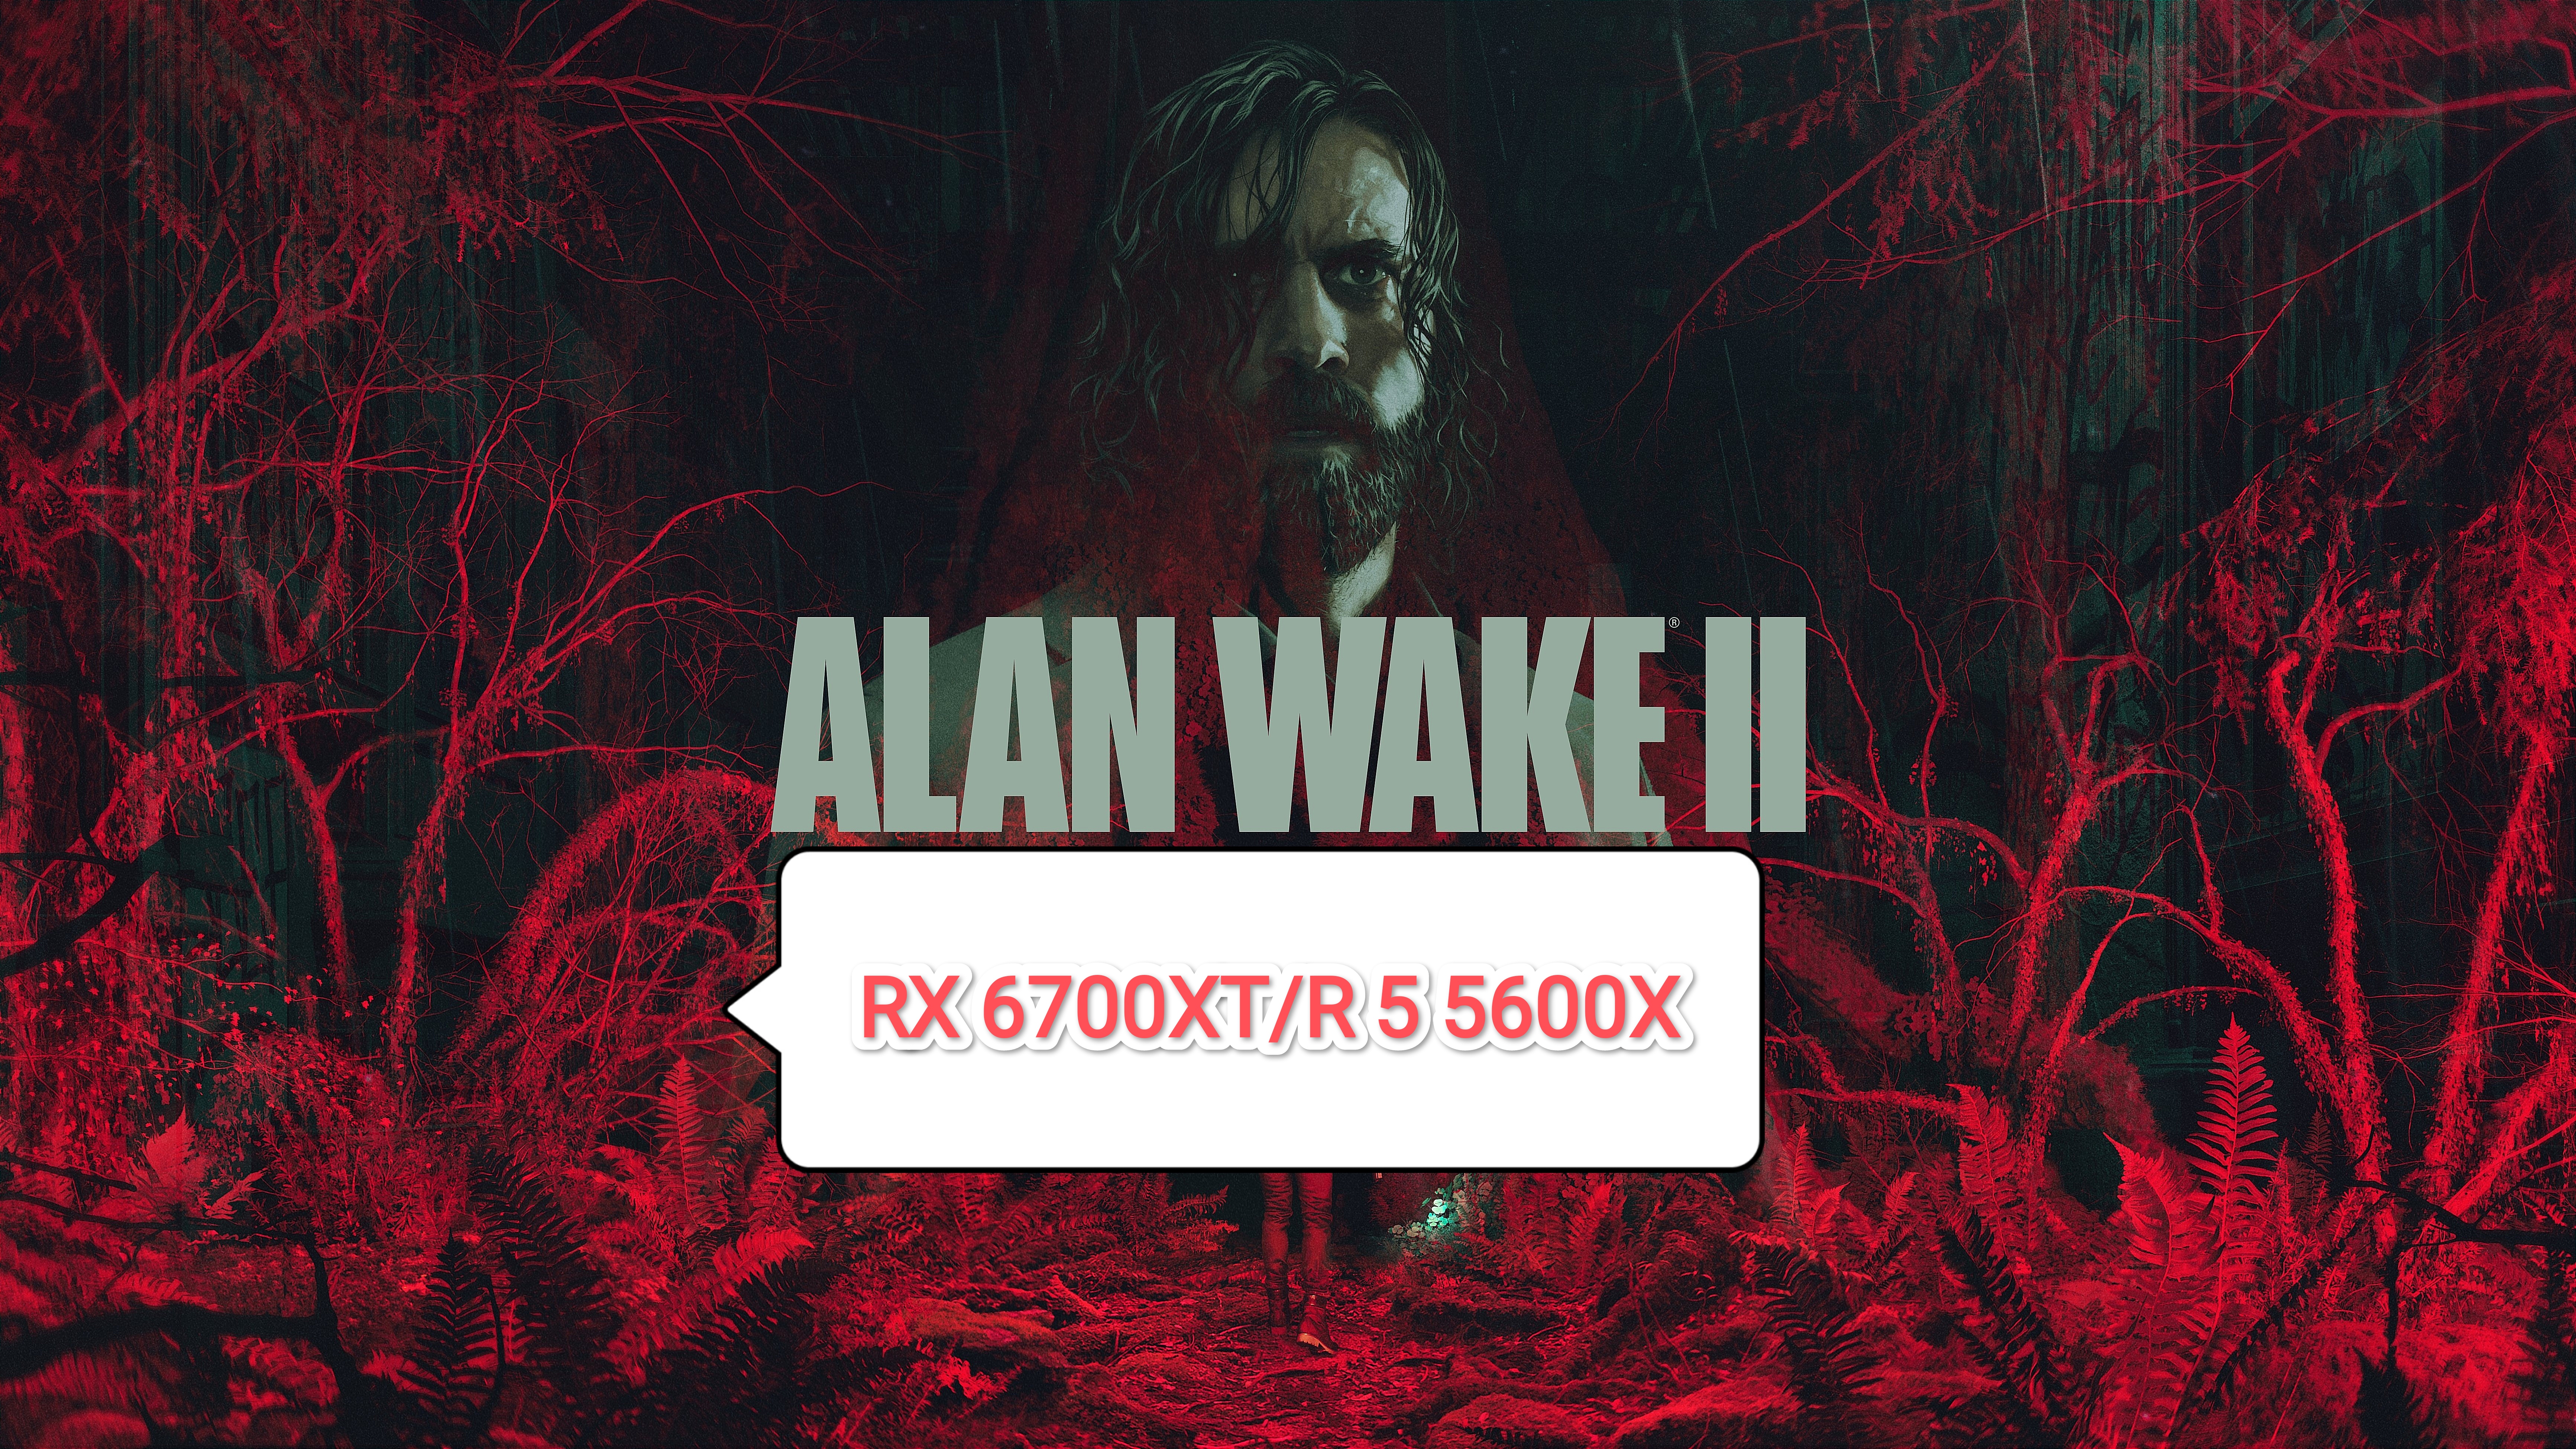 Alan Wake 2 v.1.06  -  60 фпс на бюджетном ПК (RX 6700 XT/R 5 5600 X)